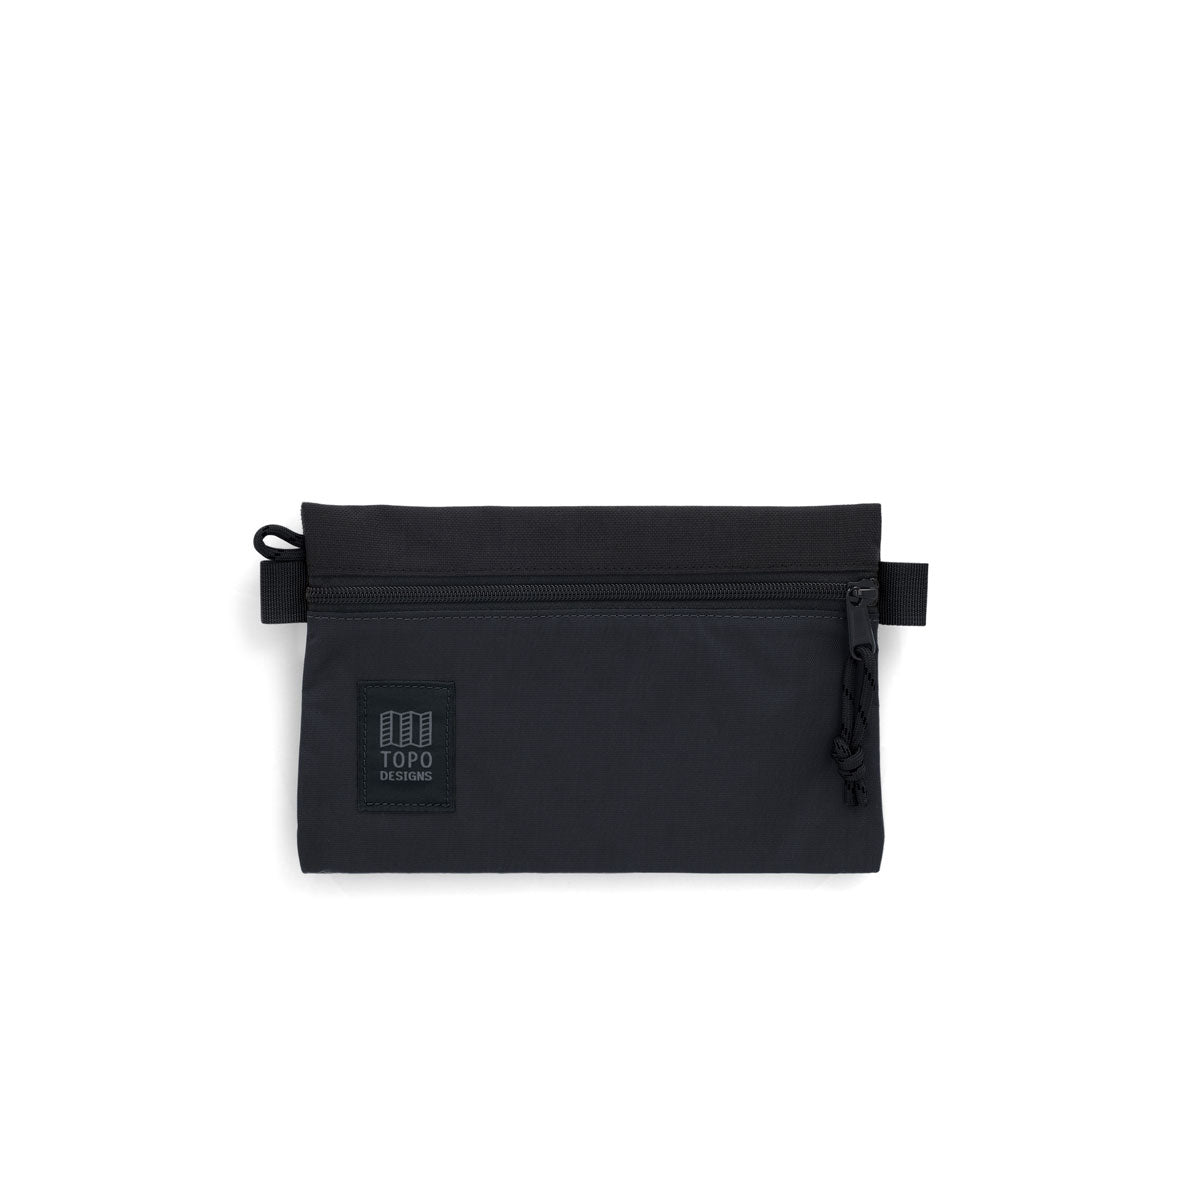 Topo Designs : Accessory Bag : Black/Black/Black